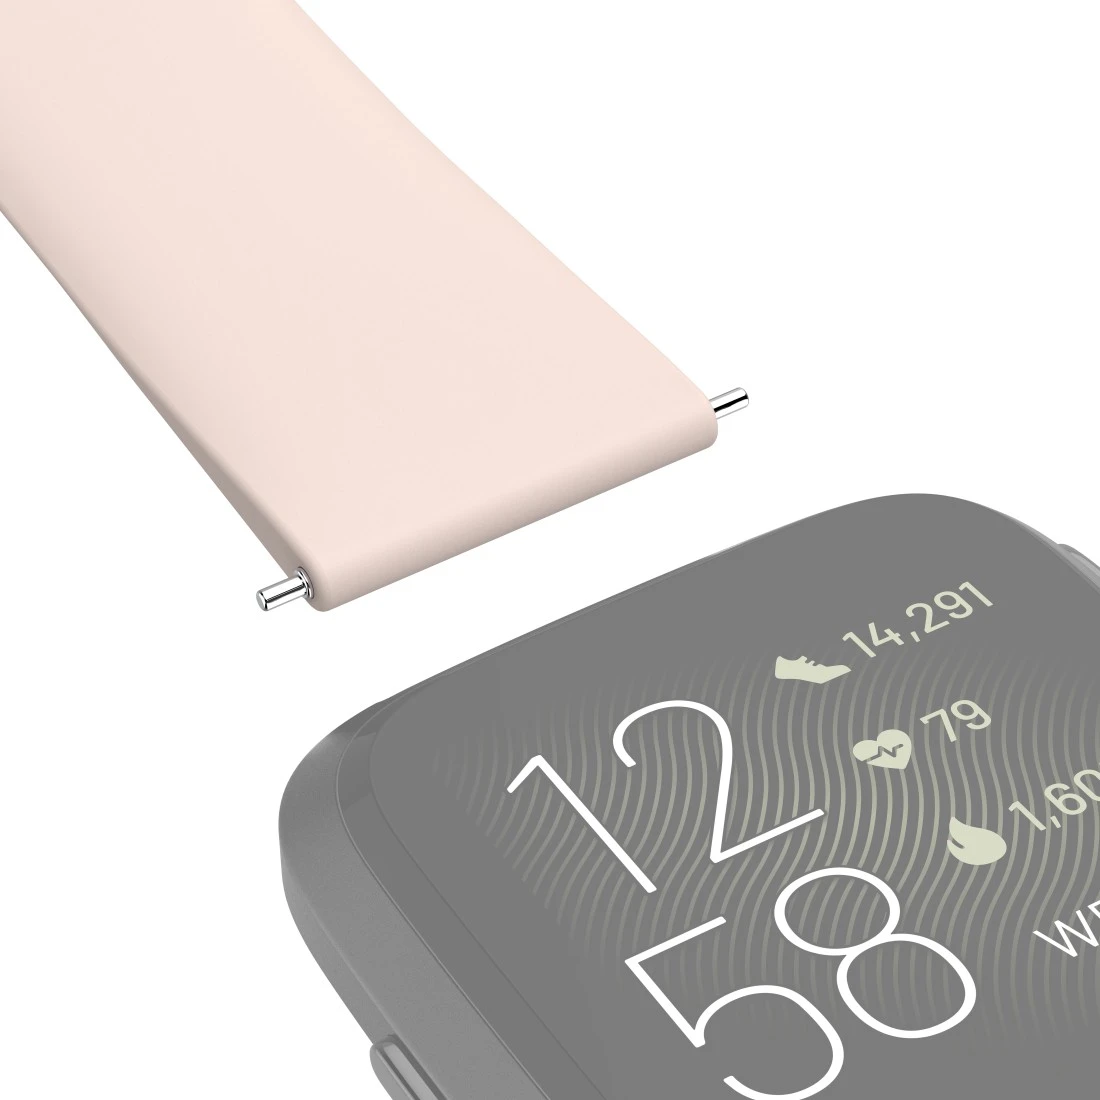 Armband für Fitbit Versa 2/Versa (Lite), Silikonarmband zum Tauschen, Rosé  | Hama